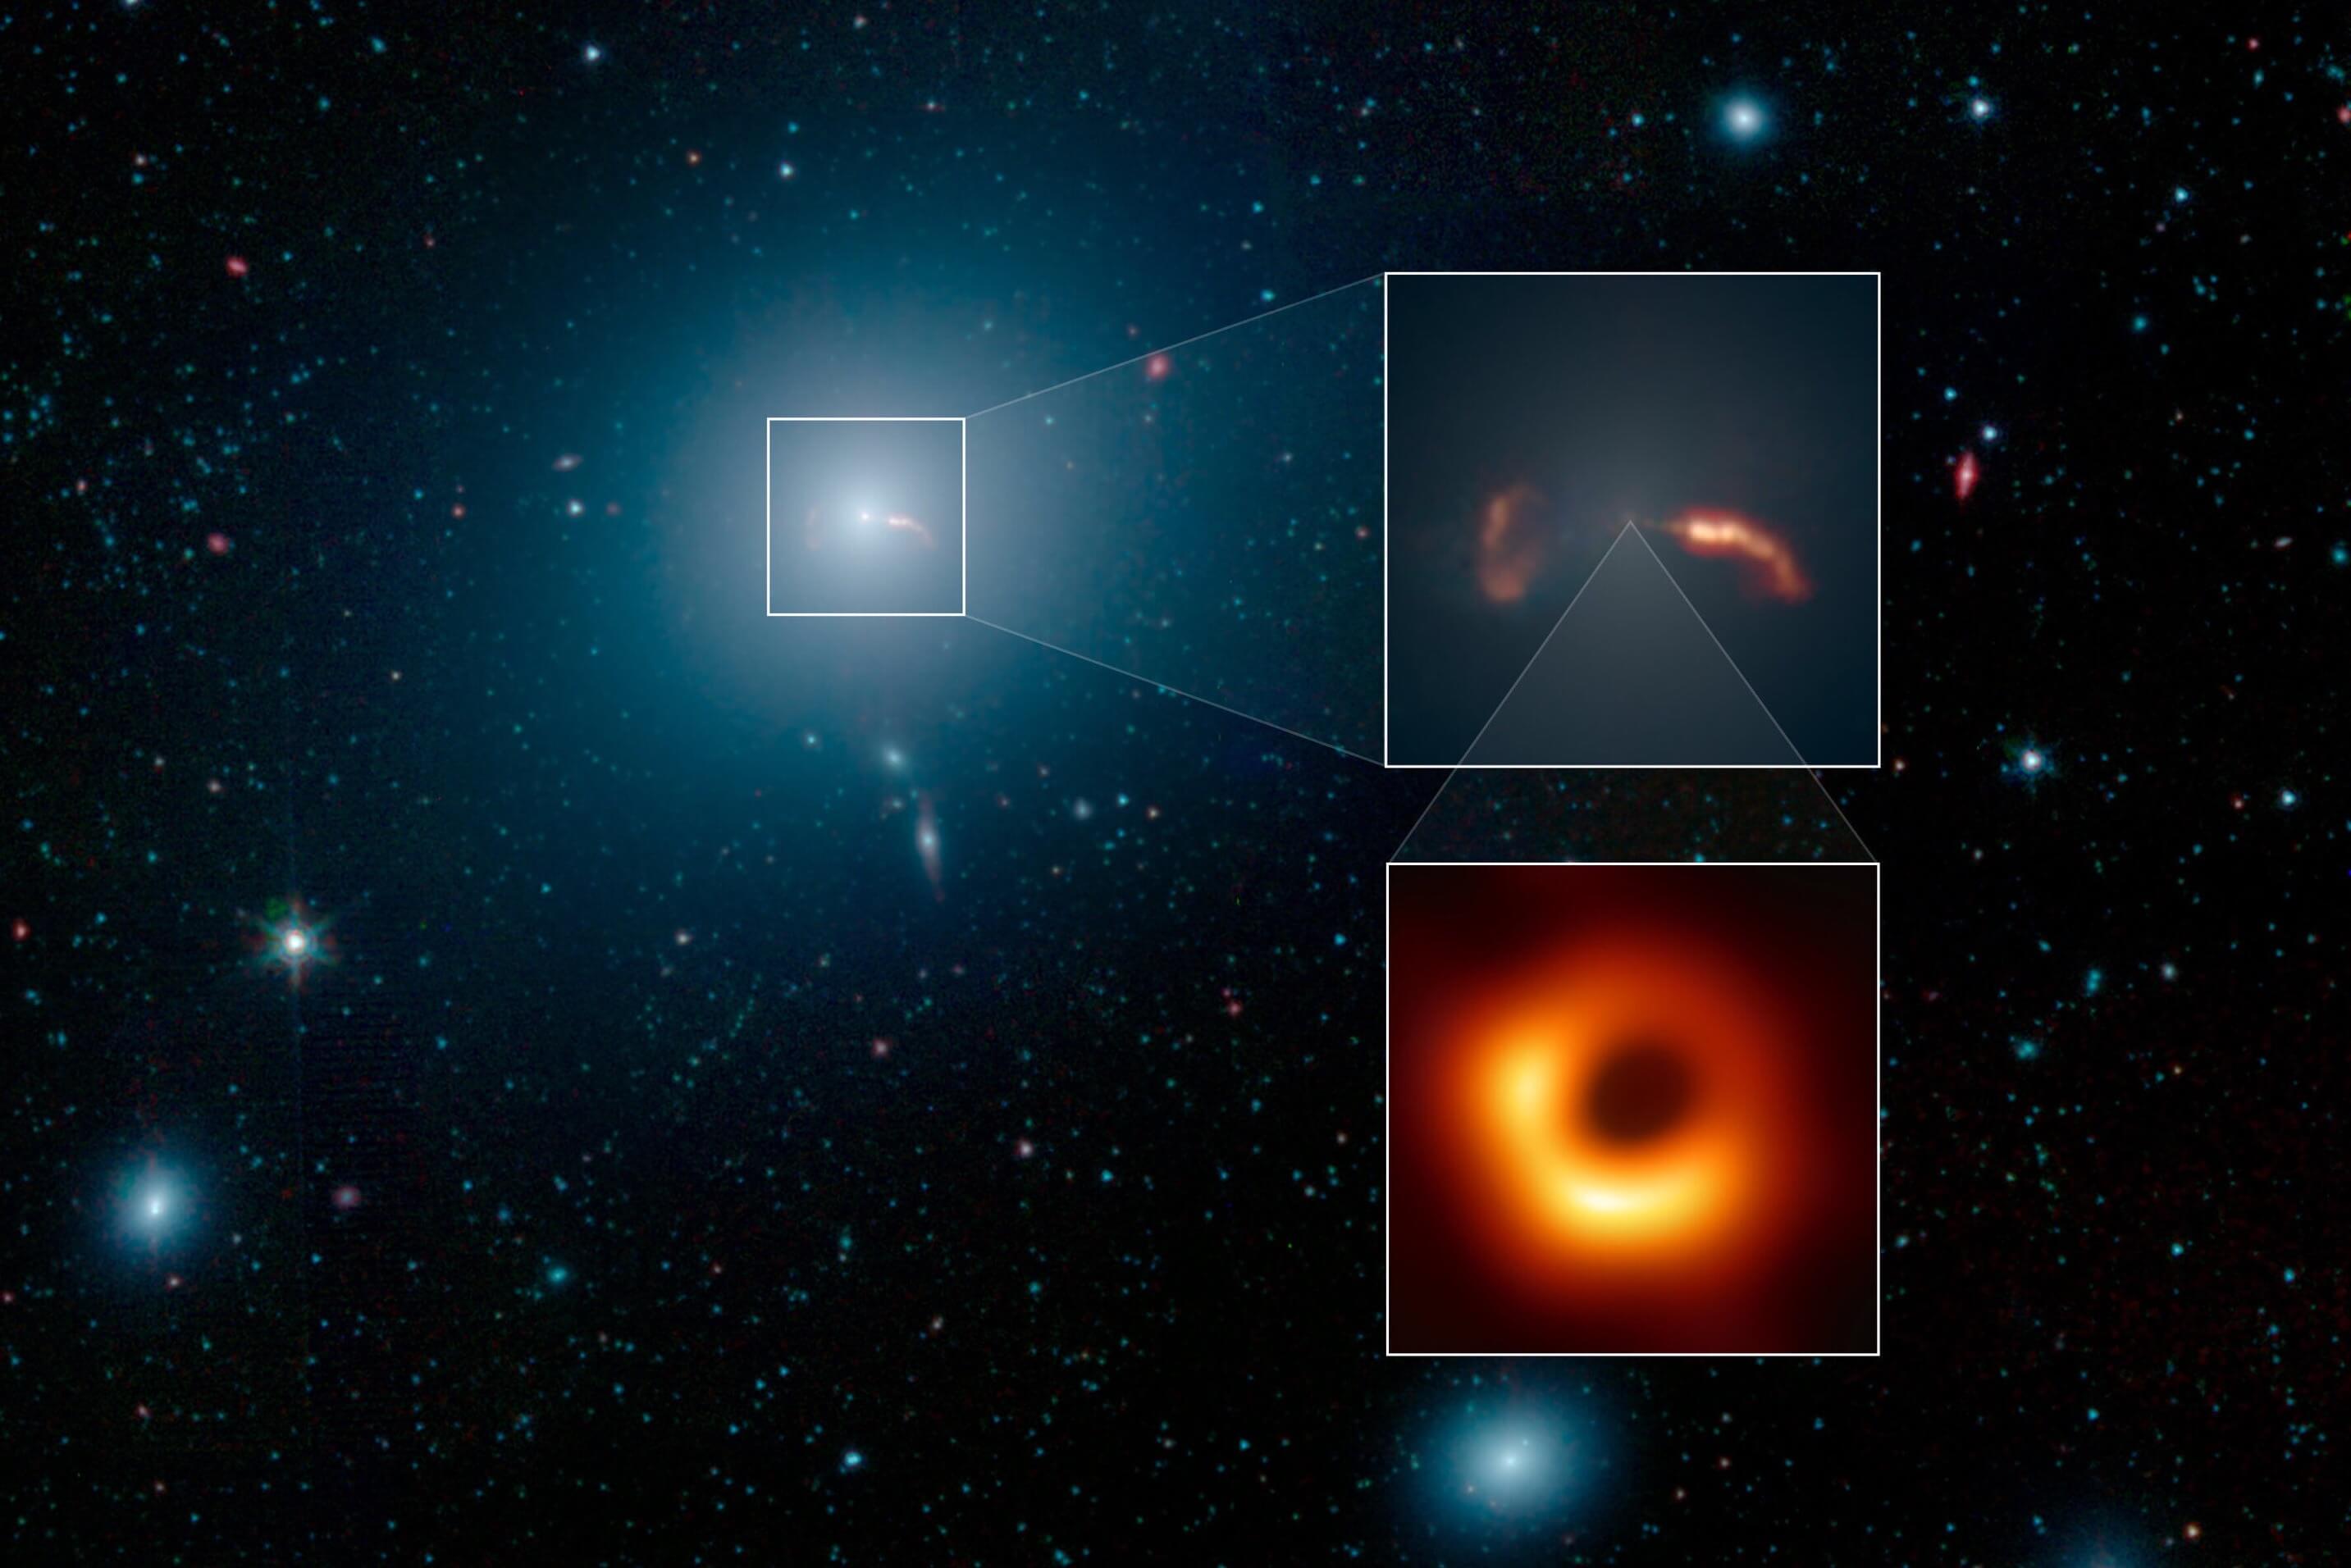 Bilim adamları bir araya kaldırmak için tarihin ilk kara delik video